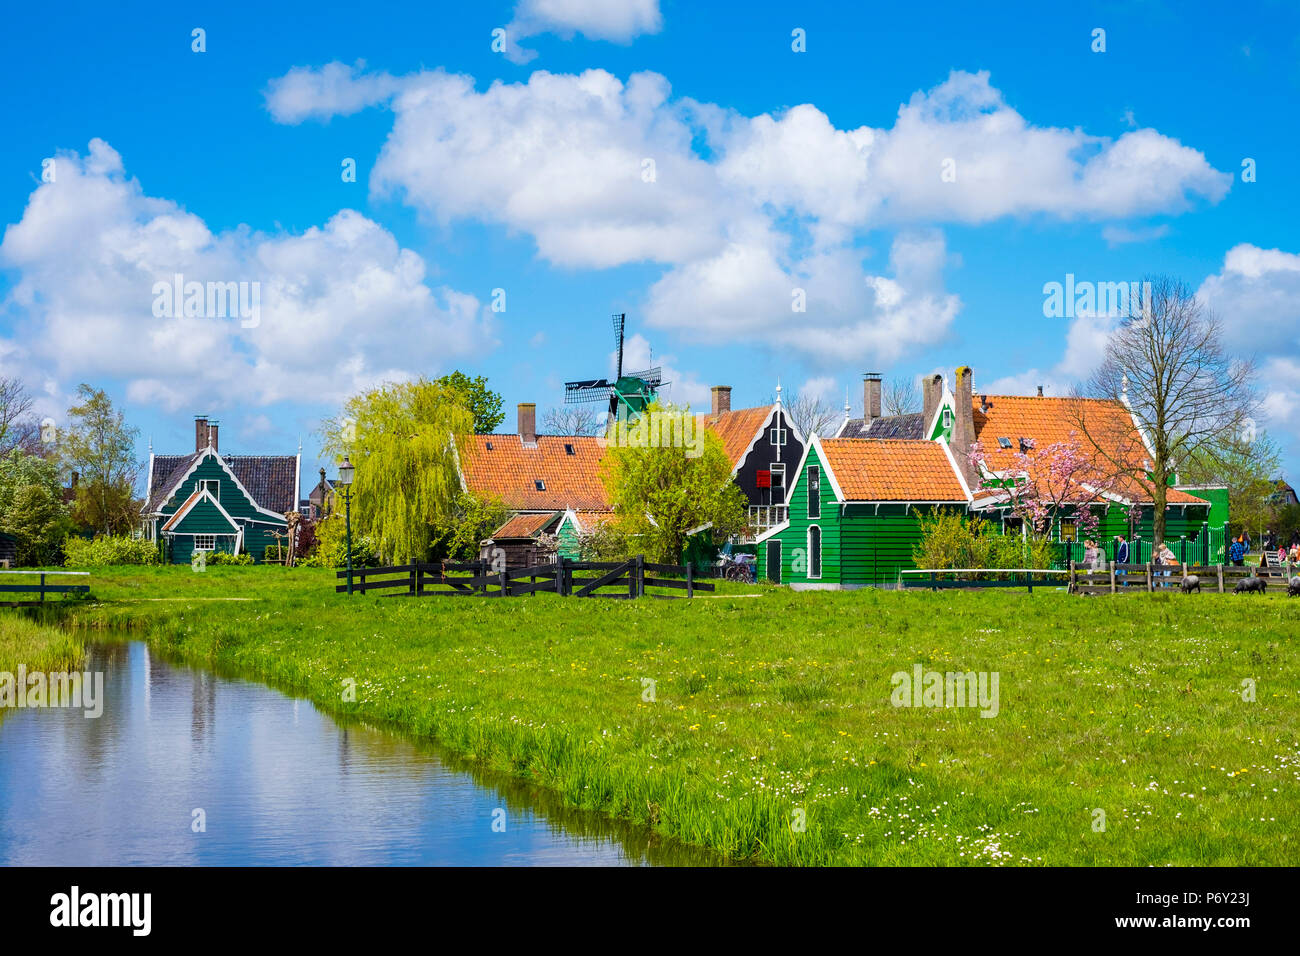 Pays Bas, Hollande du Nord, Zaandam. Les moulins à vent historiques et maisons du village de Zaanse Schans. Banque D'Images